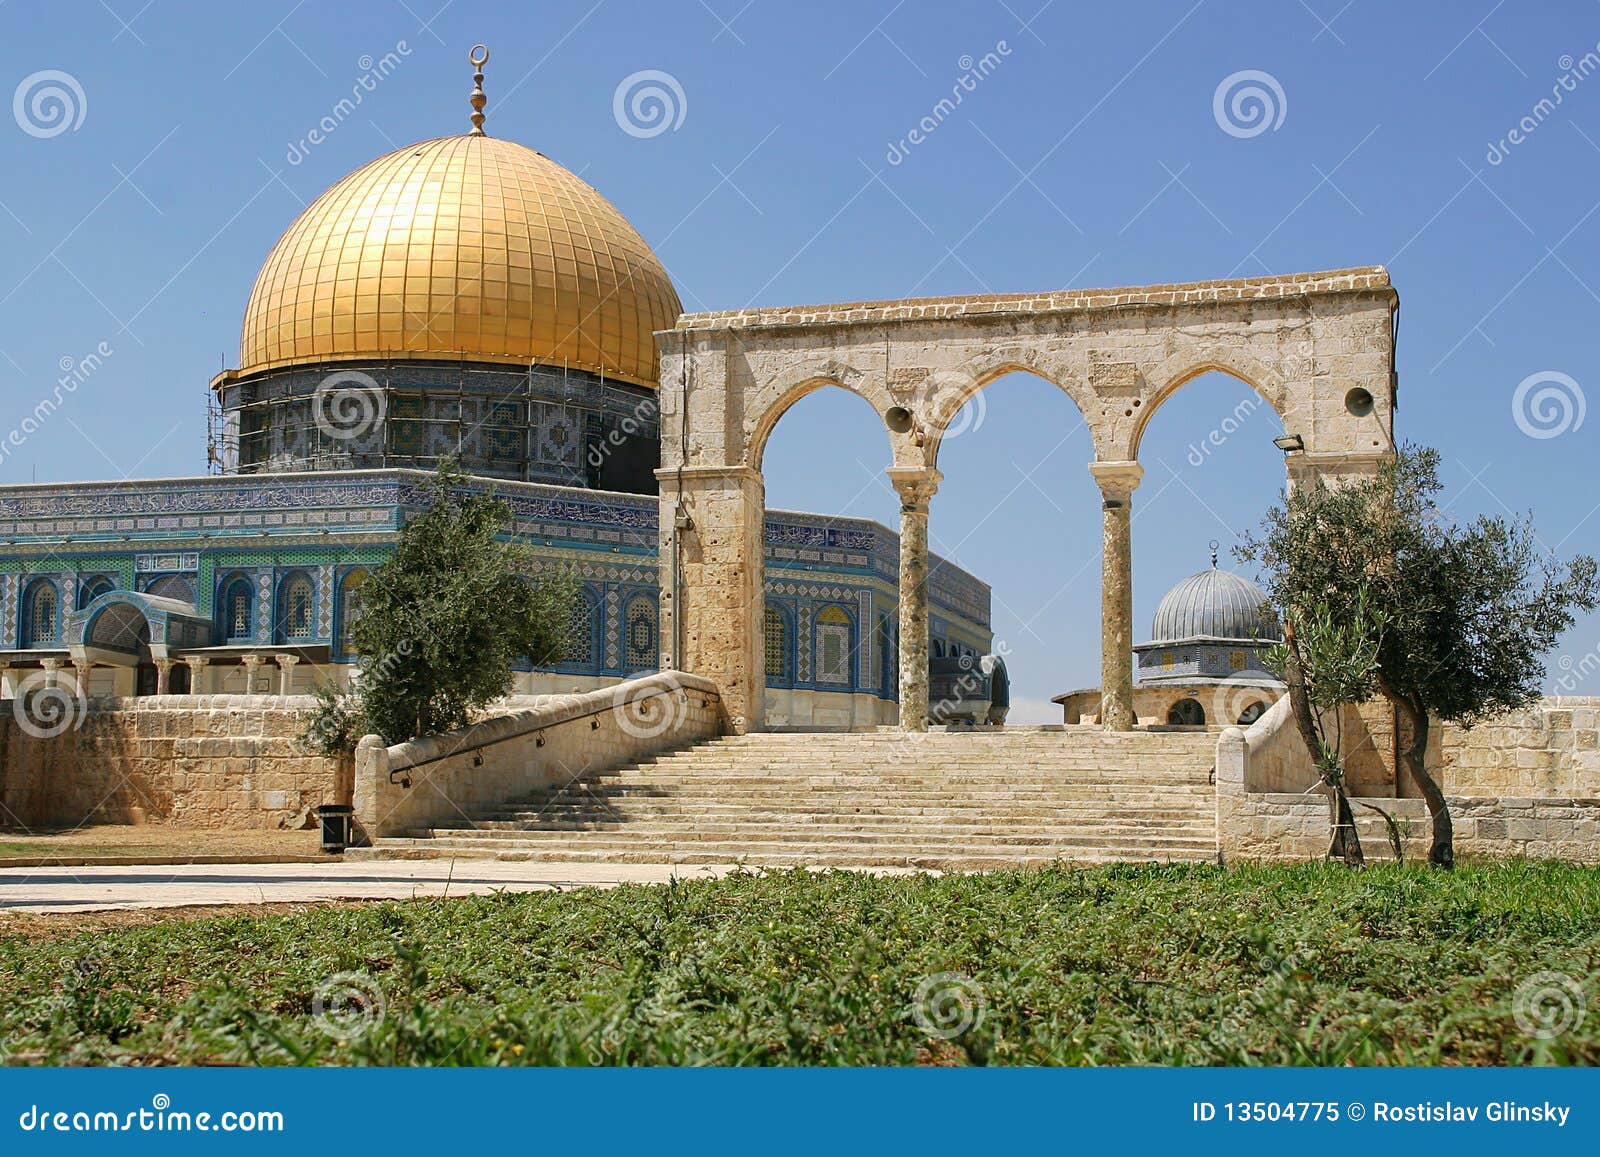 耶路撒冷圆顶清真寺攻略,耶路撒冷圆顶清真寺门票/游玩攻略/地址/图片/门票价格【携程攻略】